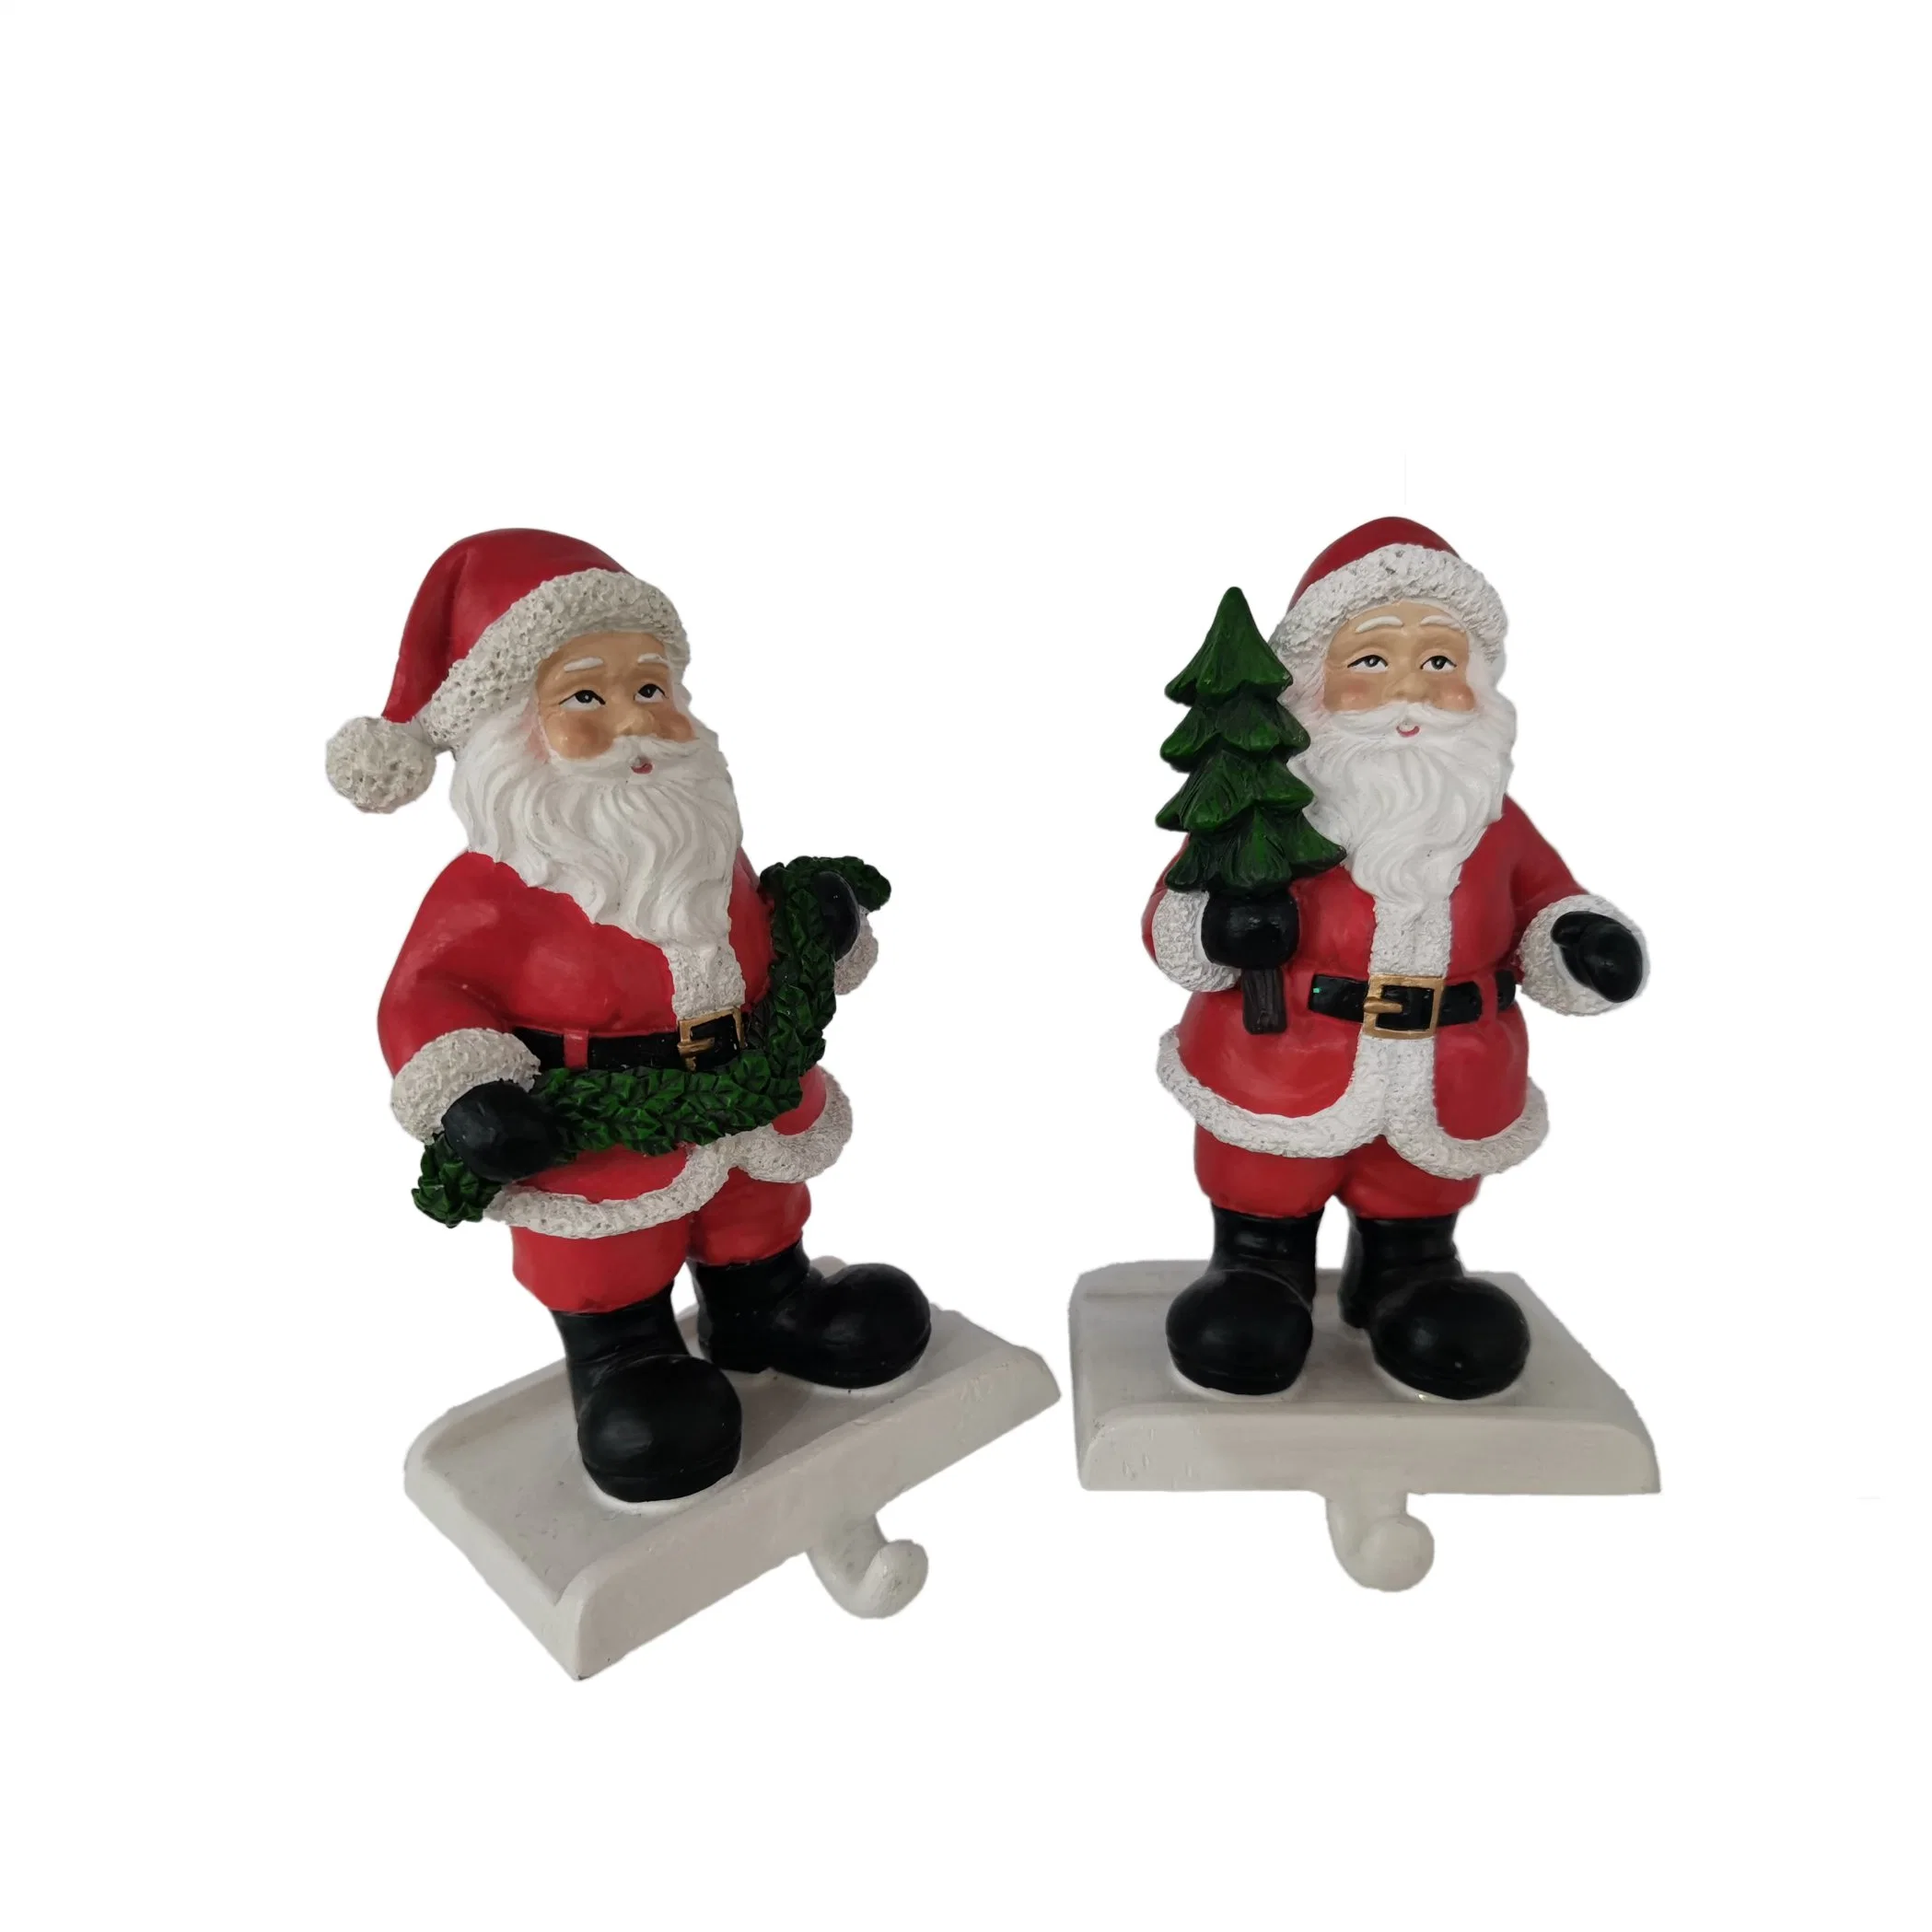 Seasonal Xmas Decor Christmas Polyresin Handmade Santa Claus Stockings & Holders Stand